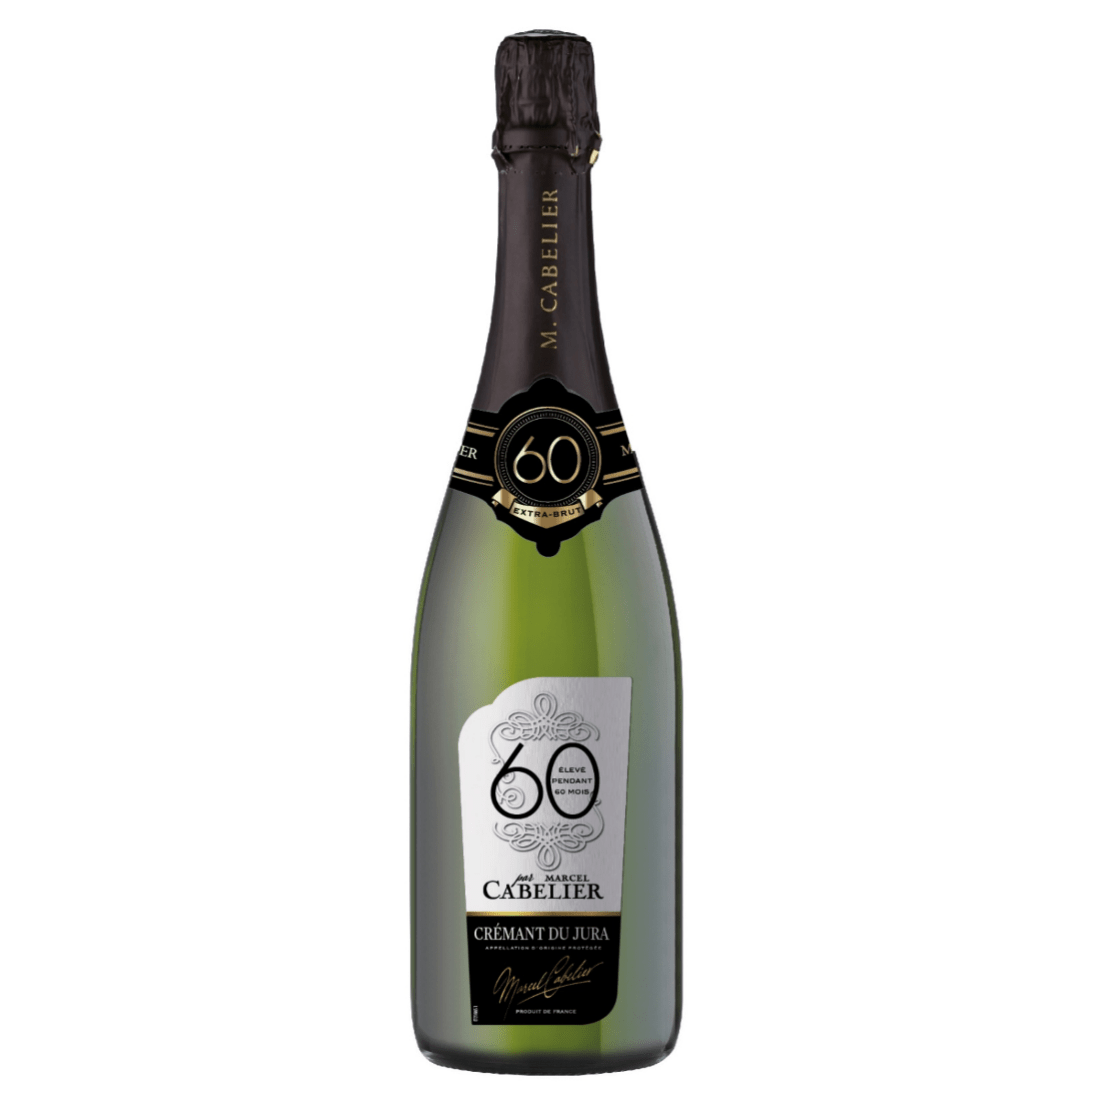 Игристое вино Marcel Cabelier Cremant du Jura 60, 0.75 